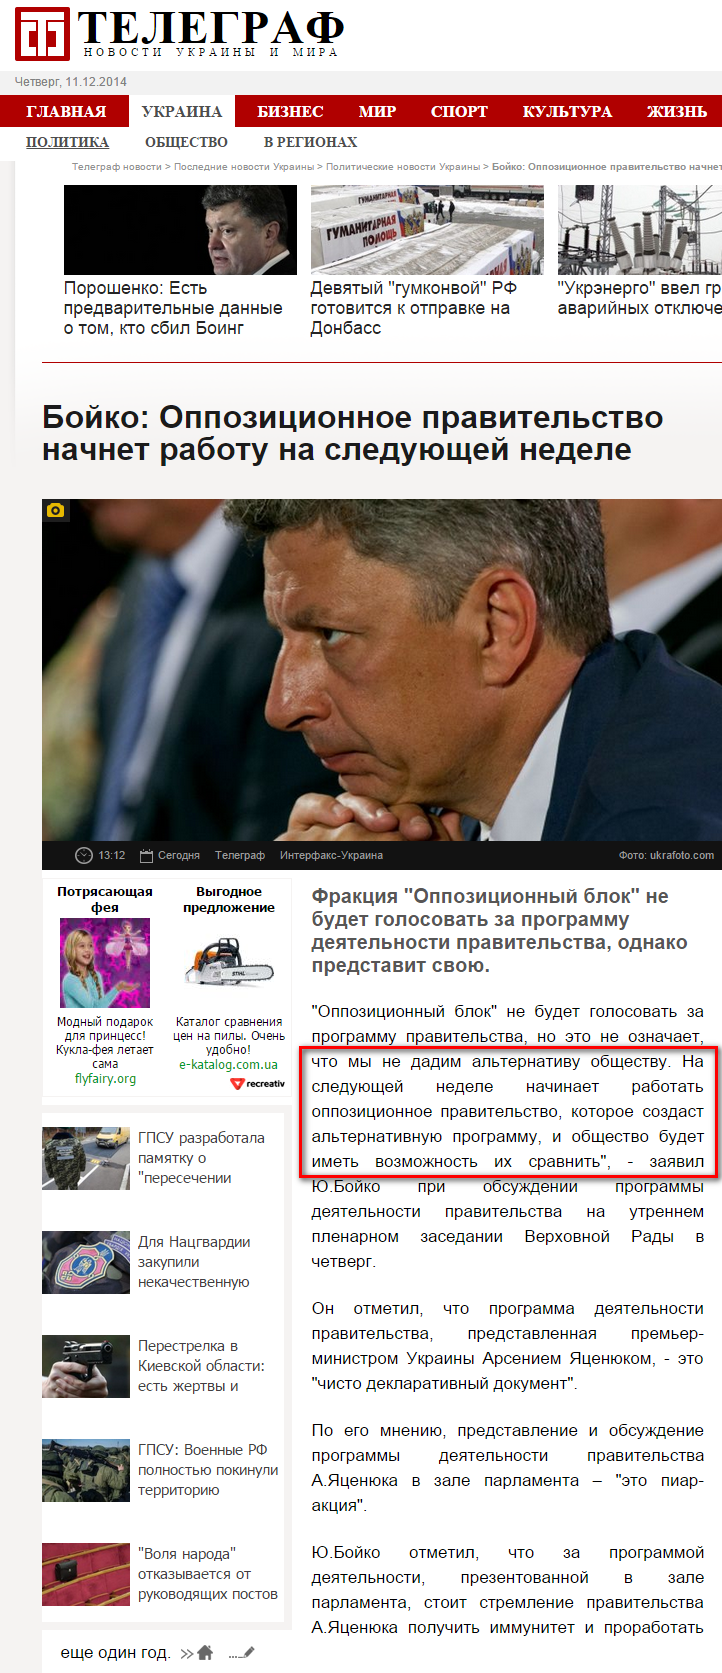 http://telegraf.com.ua/ukraina/politika/1619327-boyko-oppozitsionnoe-pravitelstvo-nachnet-rabotu-na-sleduyushhey-nedele.html